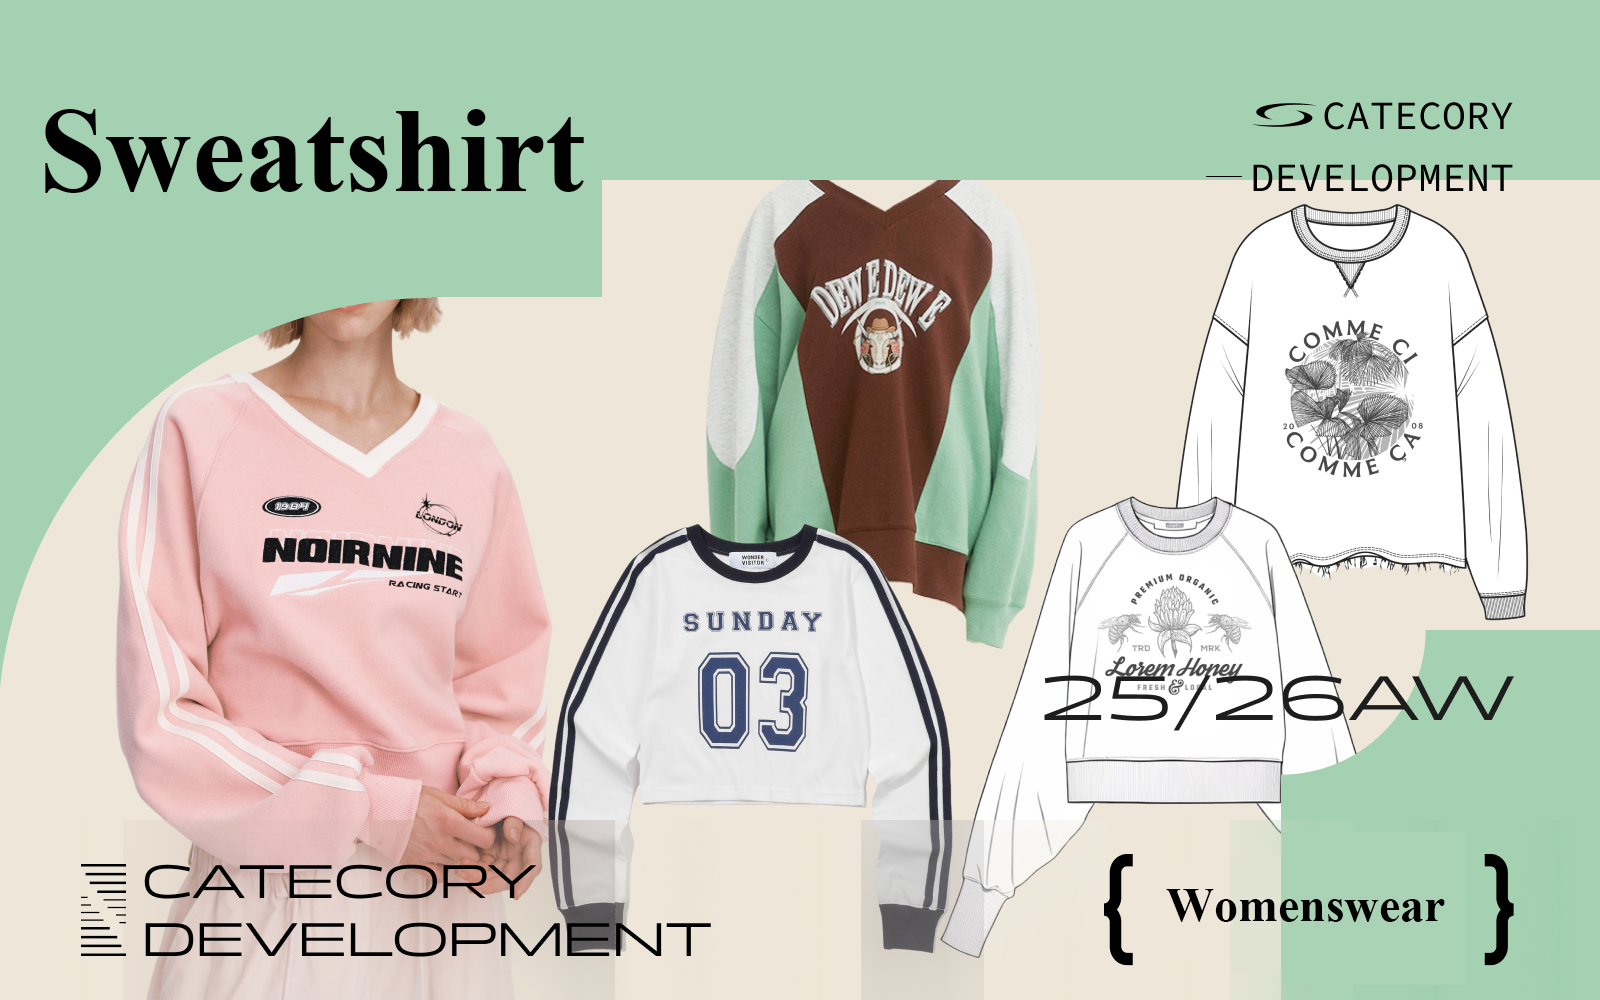 Sweatshirt -- The Design Development of Womenswear